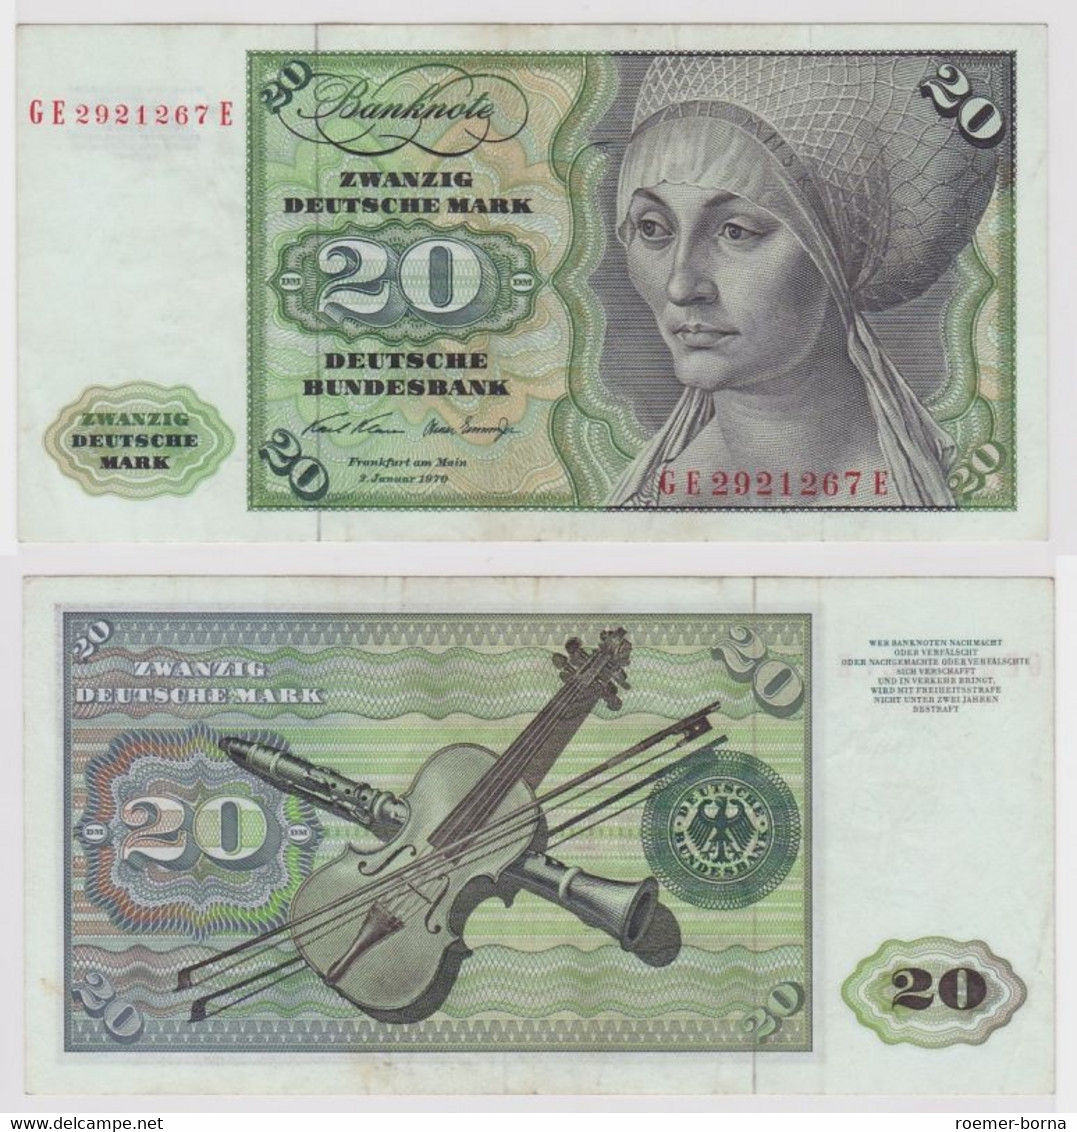 T116317 Banknote 20 DM Deutsche Mark Ro. 271b Schein 2.Jan. 1970 KN GE 2921267 E - 20 DM